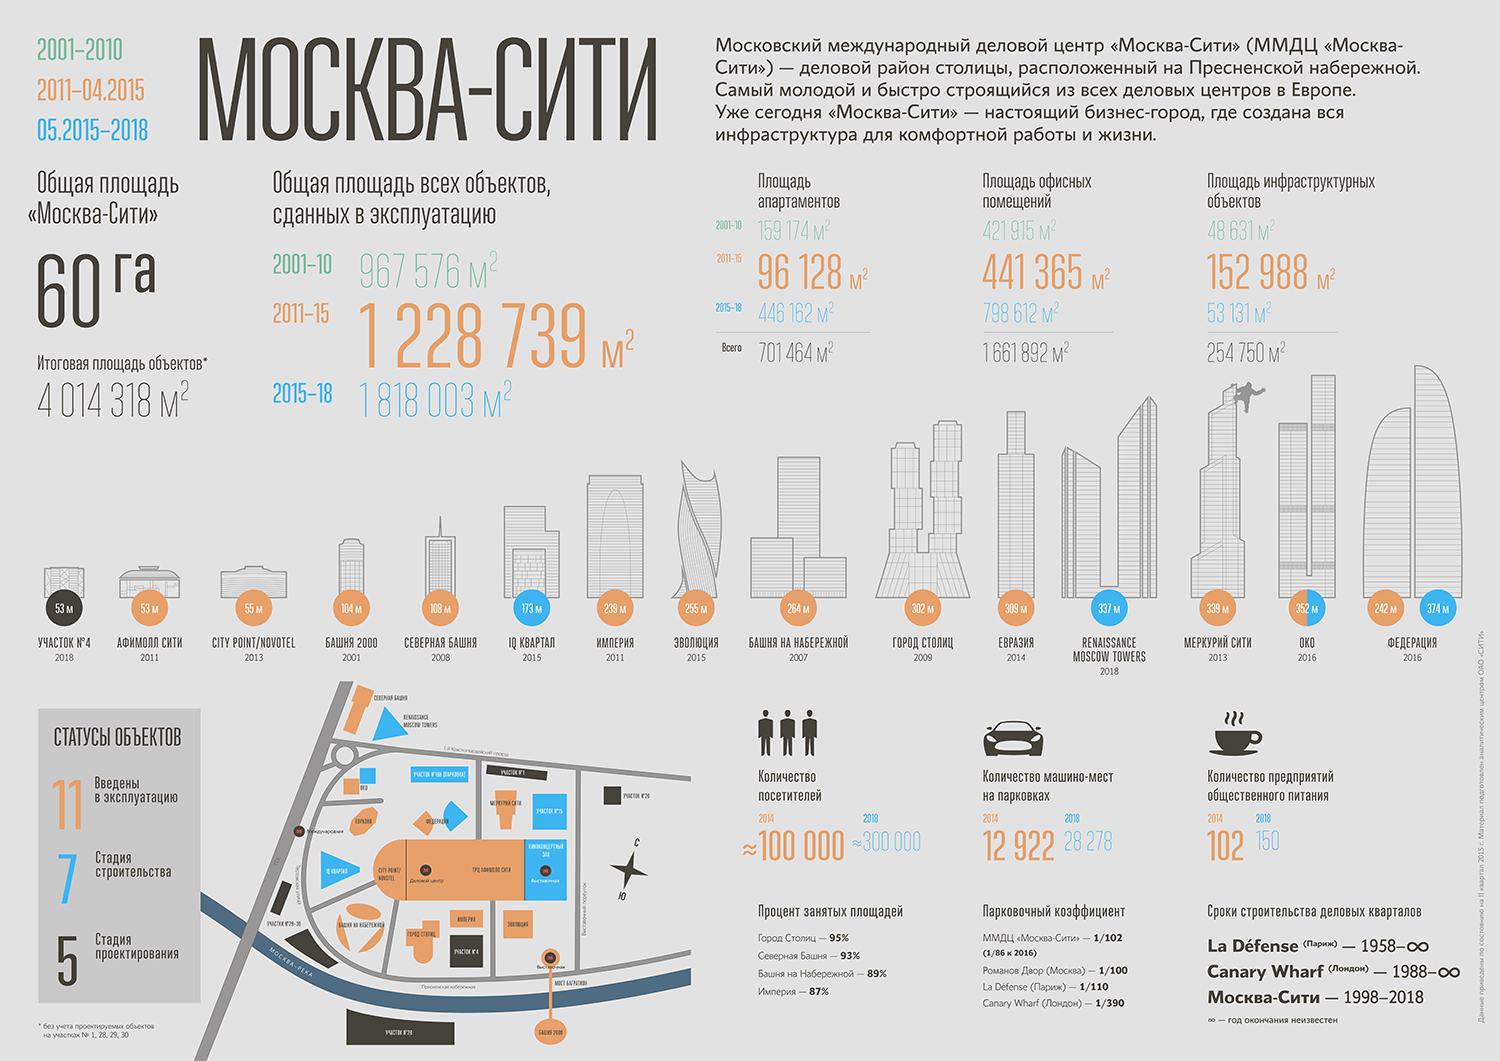 Сколько этажей в домах москвы. Башни делового центра Москва-Сити названия схема. Москва Сити схема расположения башен названия. Высота башен Москва Сити. Москва Сити высота башен и их названия.